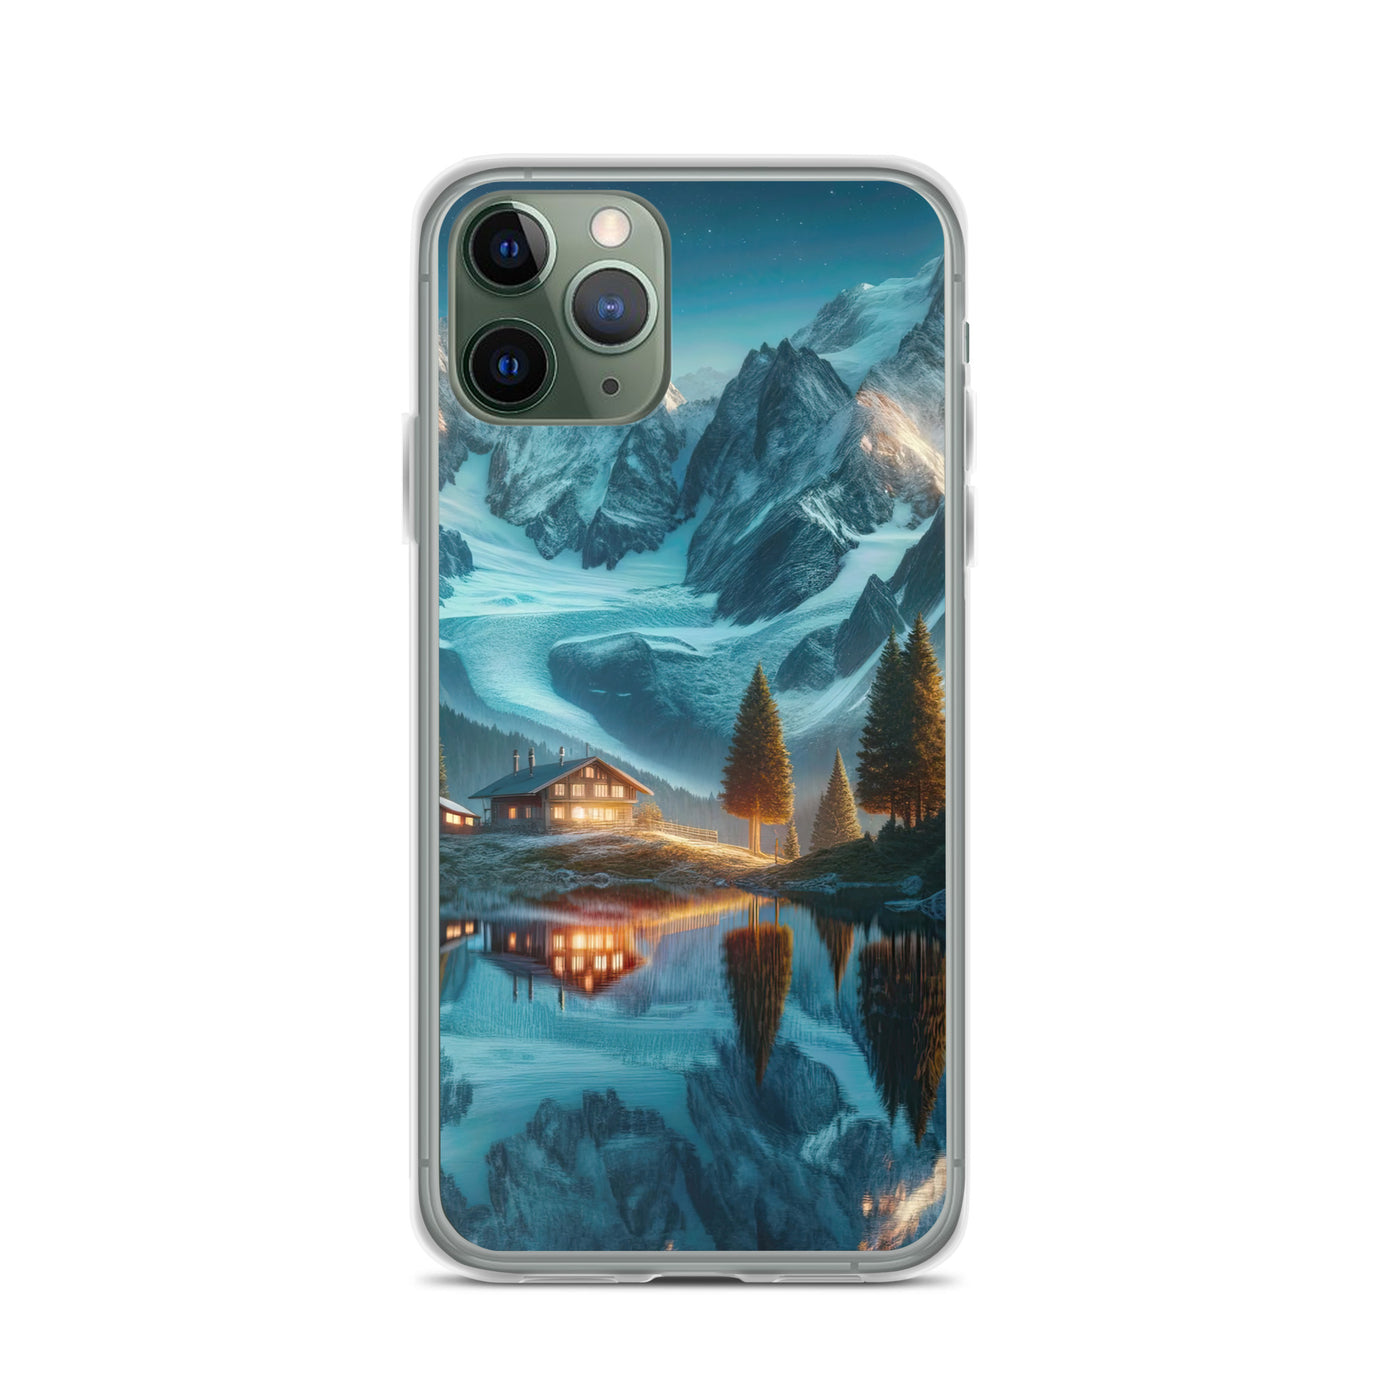 Stille Alpenmajestätik: Digitale Kunst mit Schnee und Bergsee-Spiegelung - iPhone Schutzhülle (durchsichtig) berge xxx yyy zzz iPhone 11 Pro